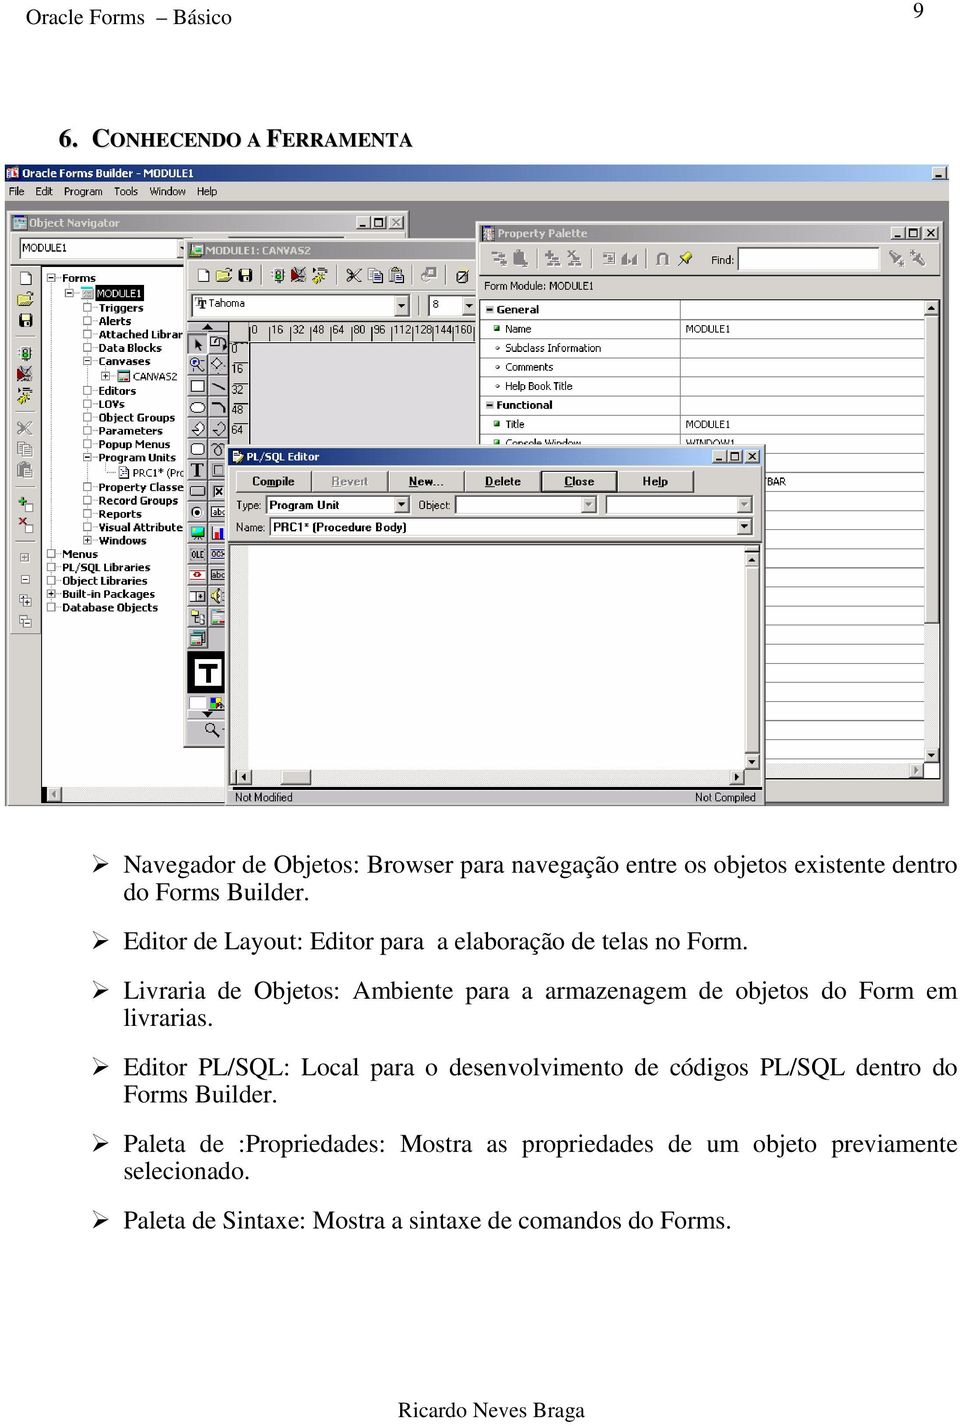 Editor de Layout: Editor para a elaboração de telas no Form.